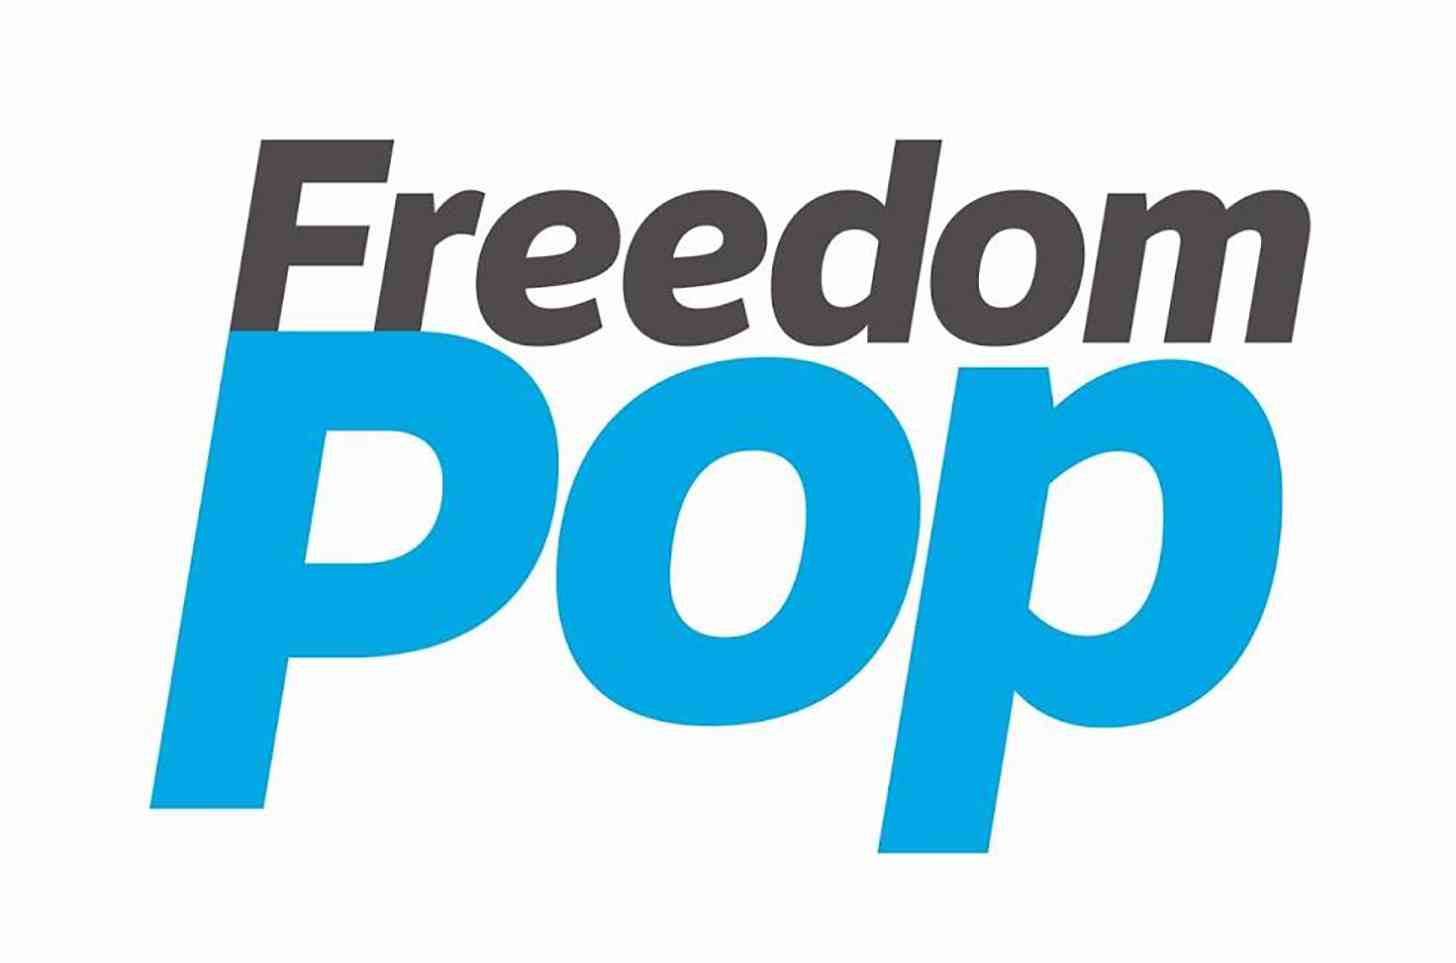 FreedomPop logo large